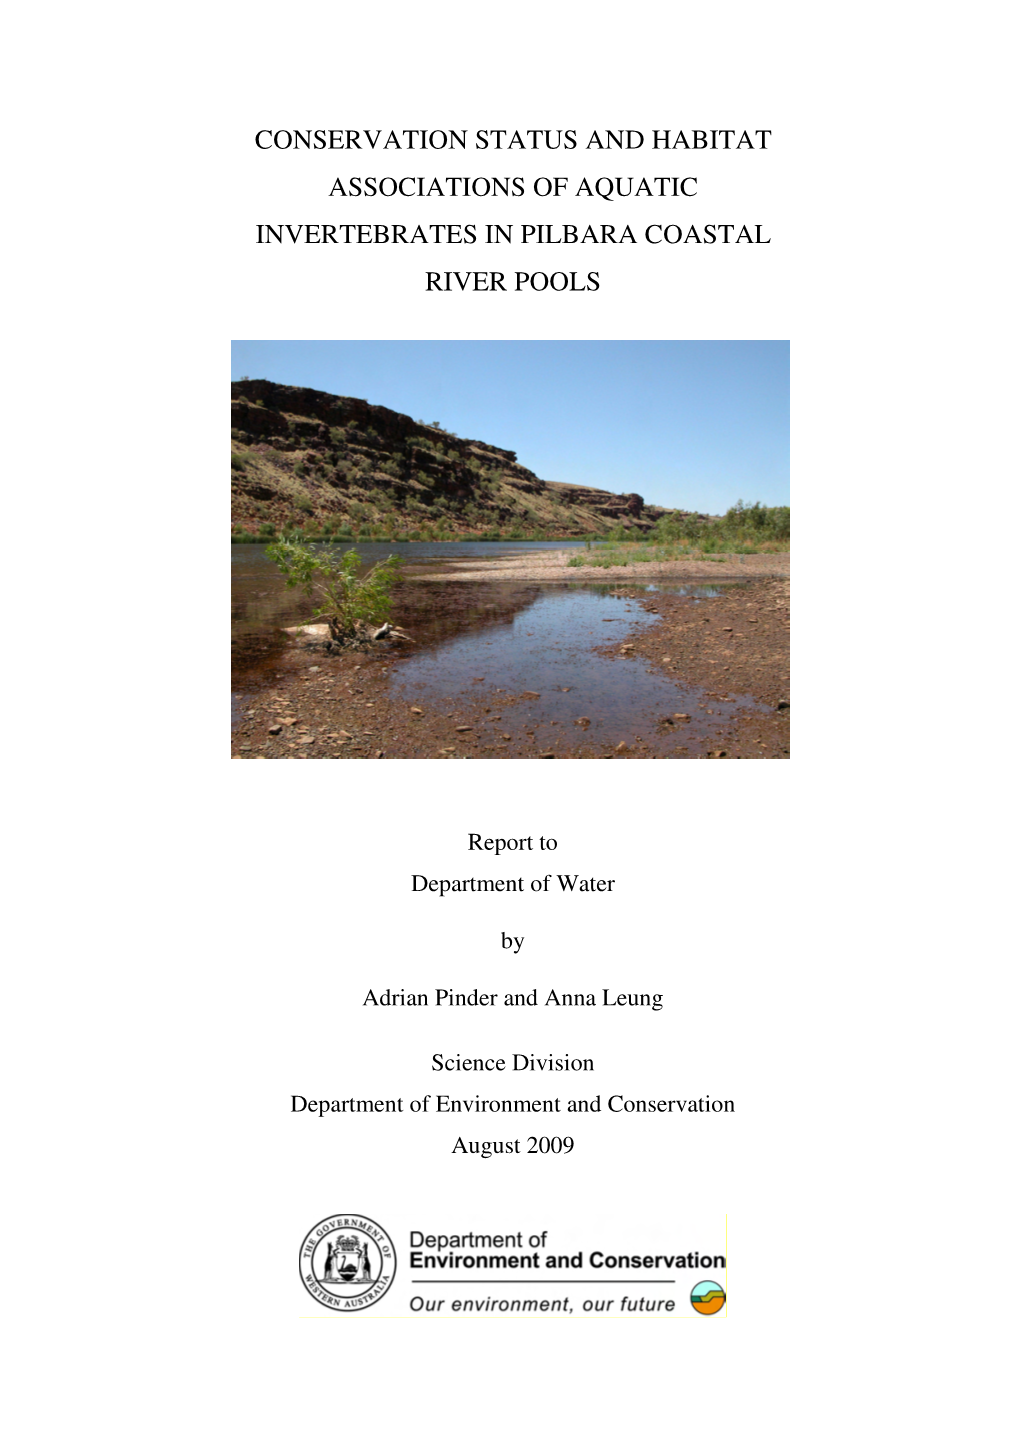 Conservation Status and Habitat Associations of Aquatic Invertebrates in Pilbara Coastal River Pools